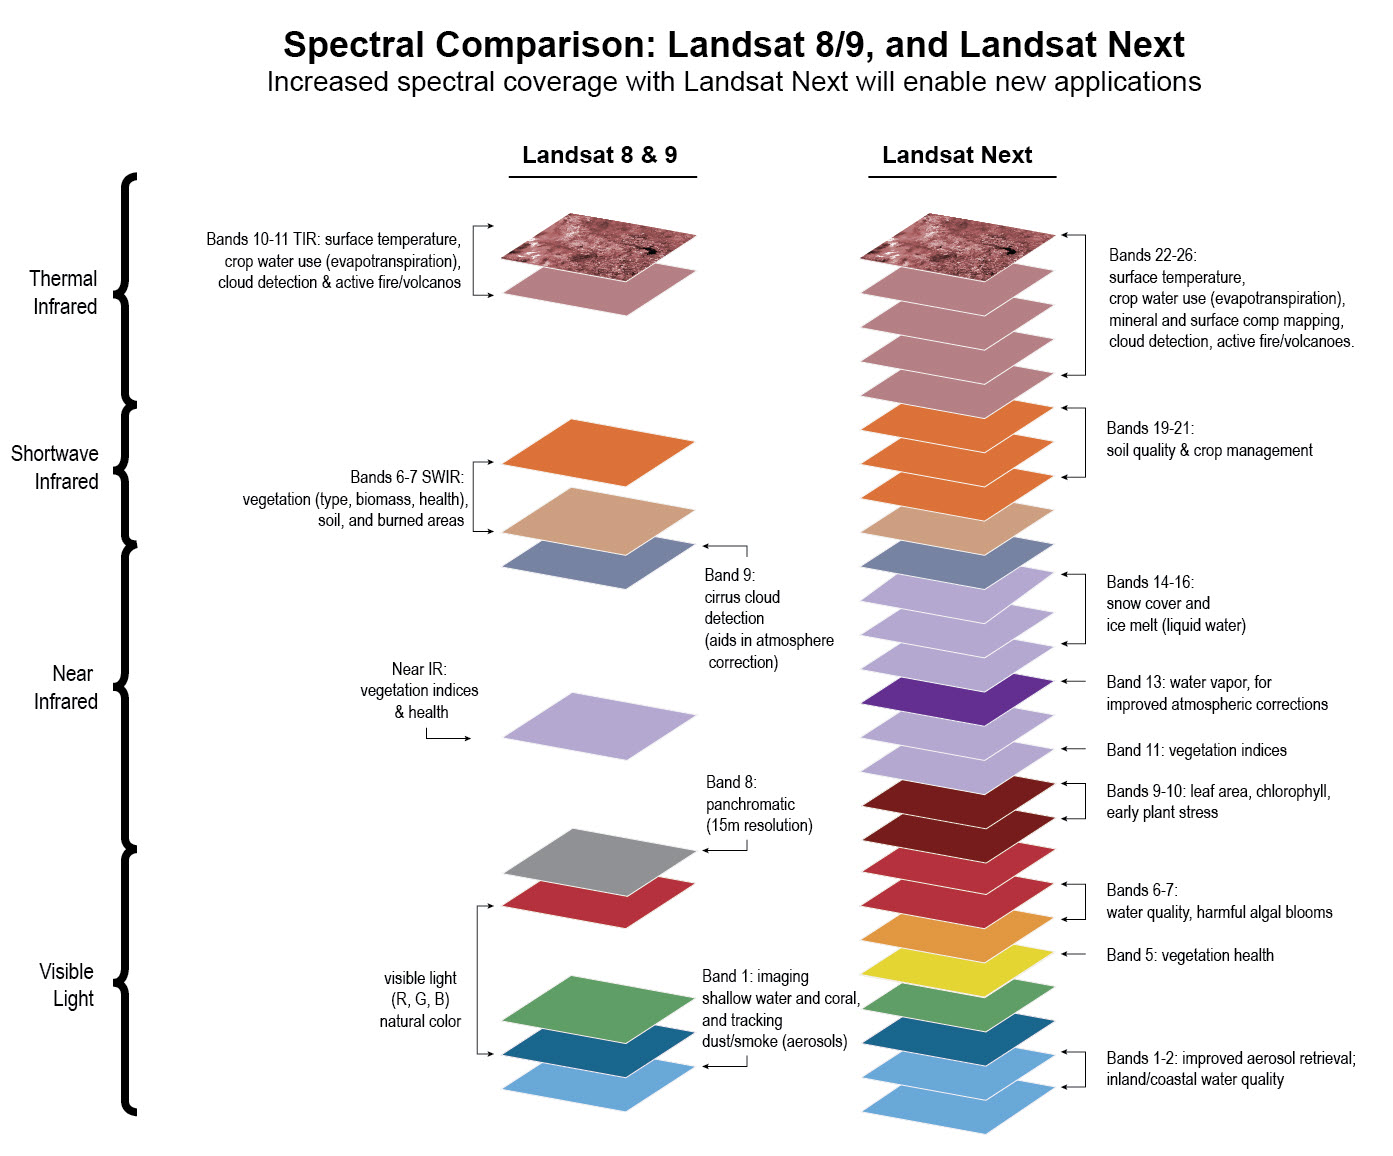 Image of spectral comparison of Landsat 9 and Landsat Next.